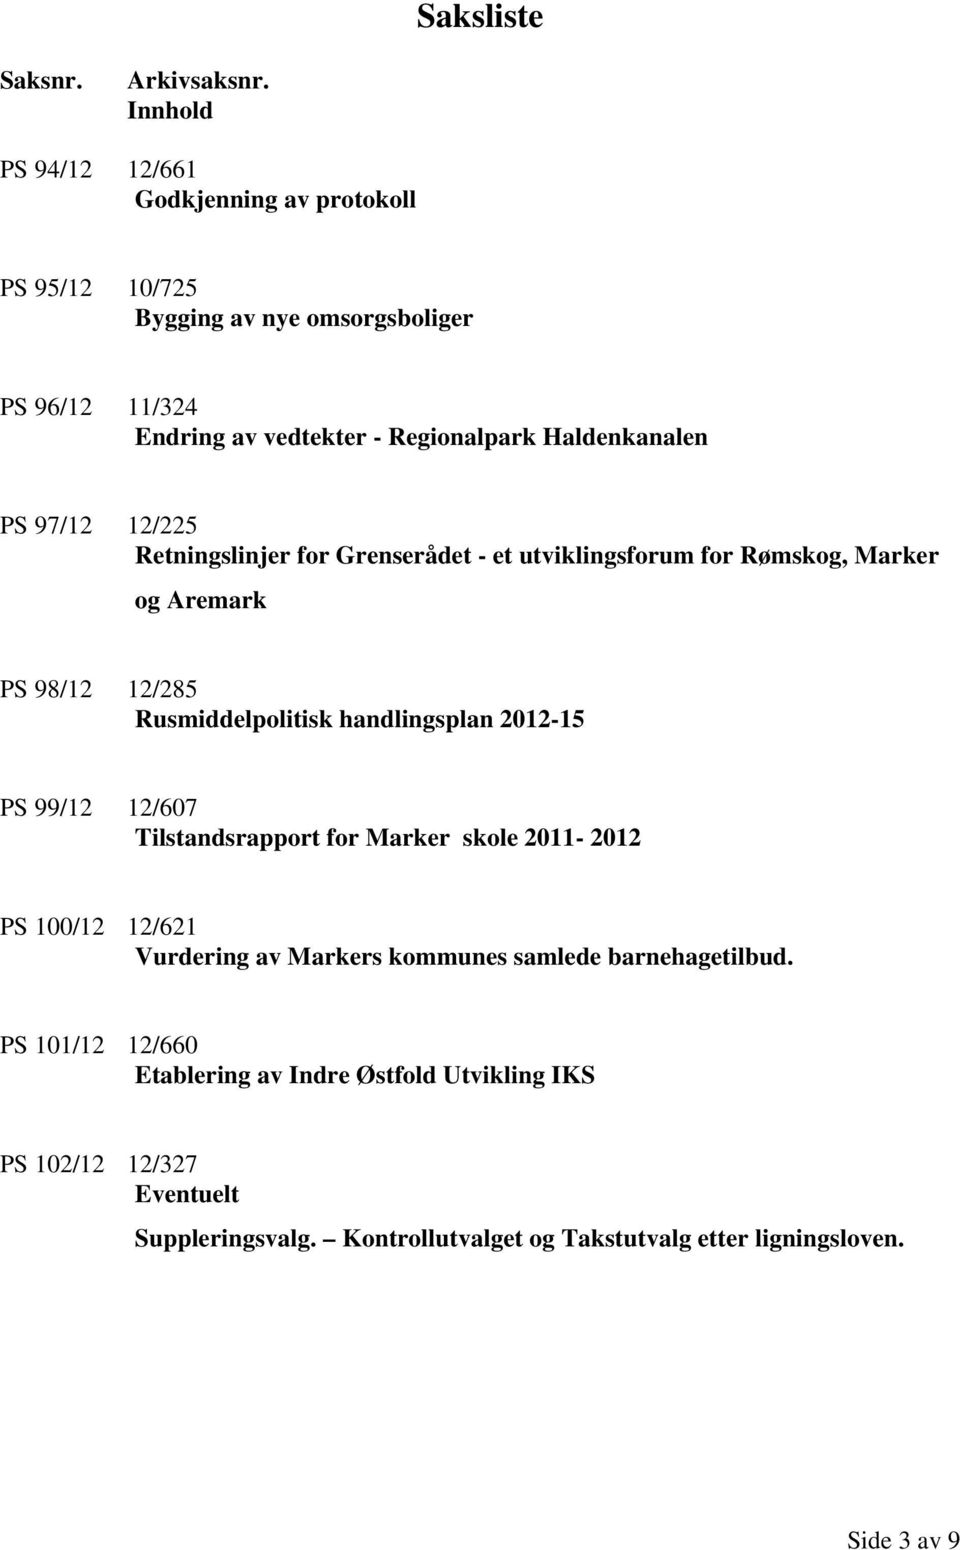 PS 97/12 12/225 Retningslinjer for Grenserådet - et utviklingsforum for Rømskog, Marker og Aremark PS 98/12 12/285 Rusmiddelpolitisk handlingsplan 2012-15 PS